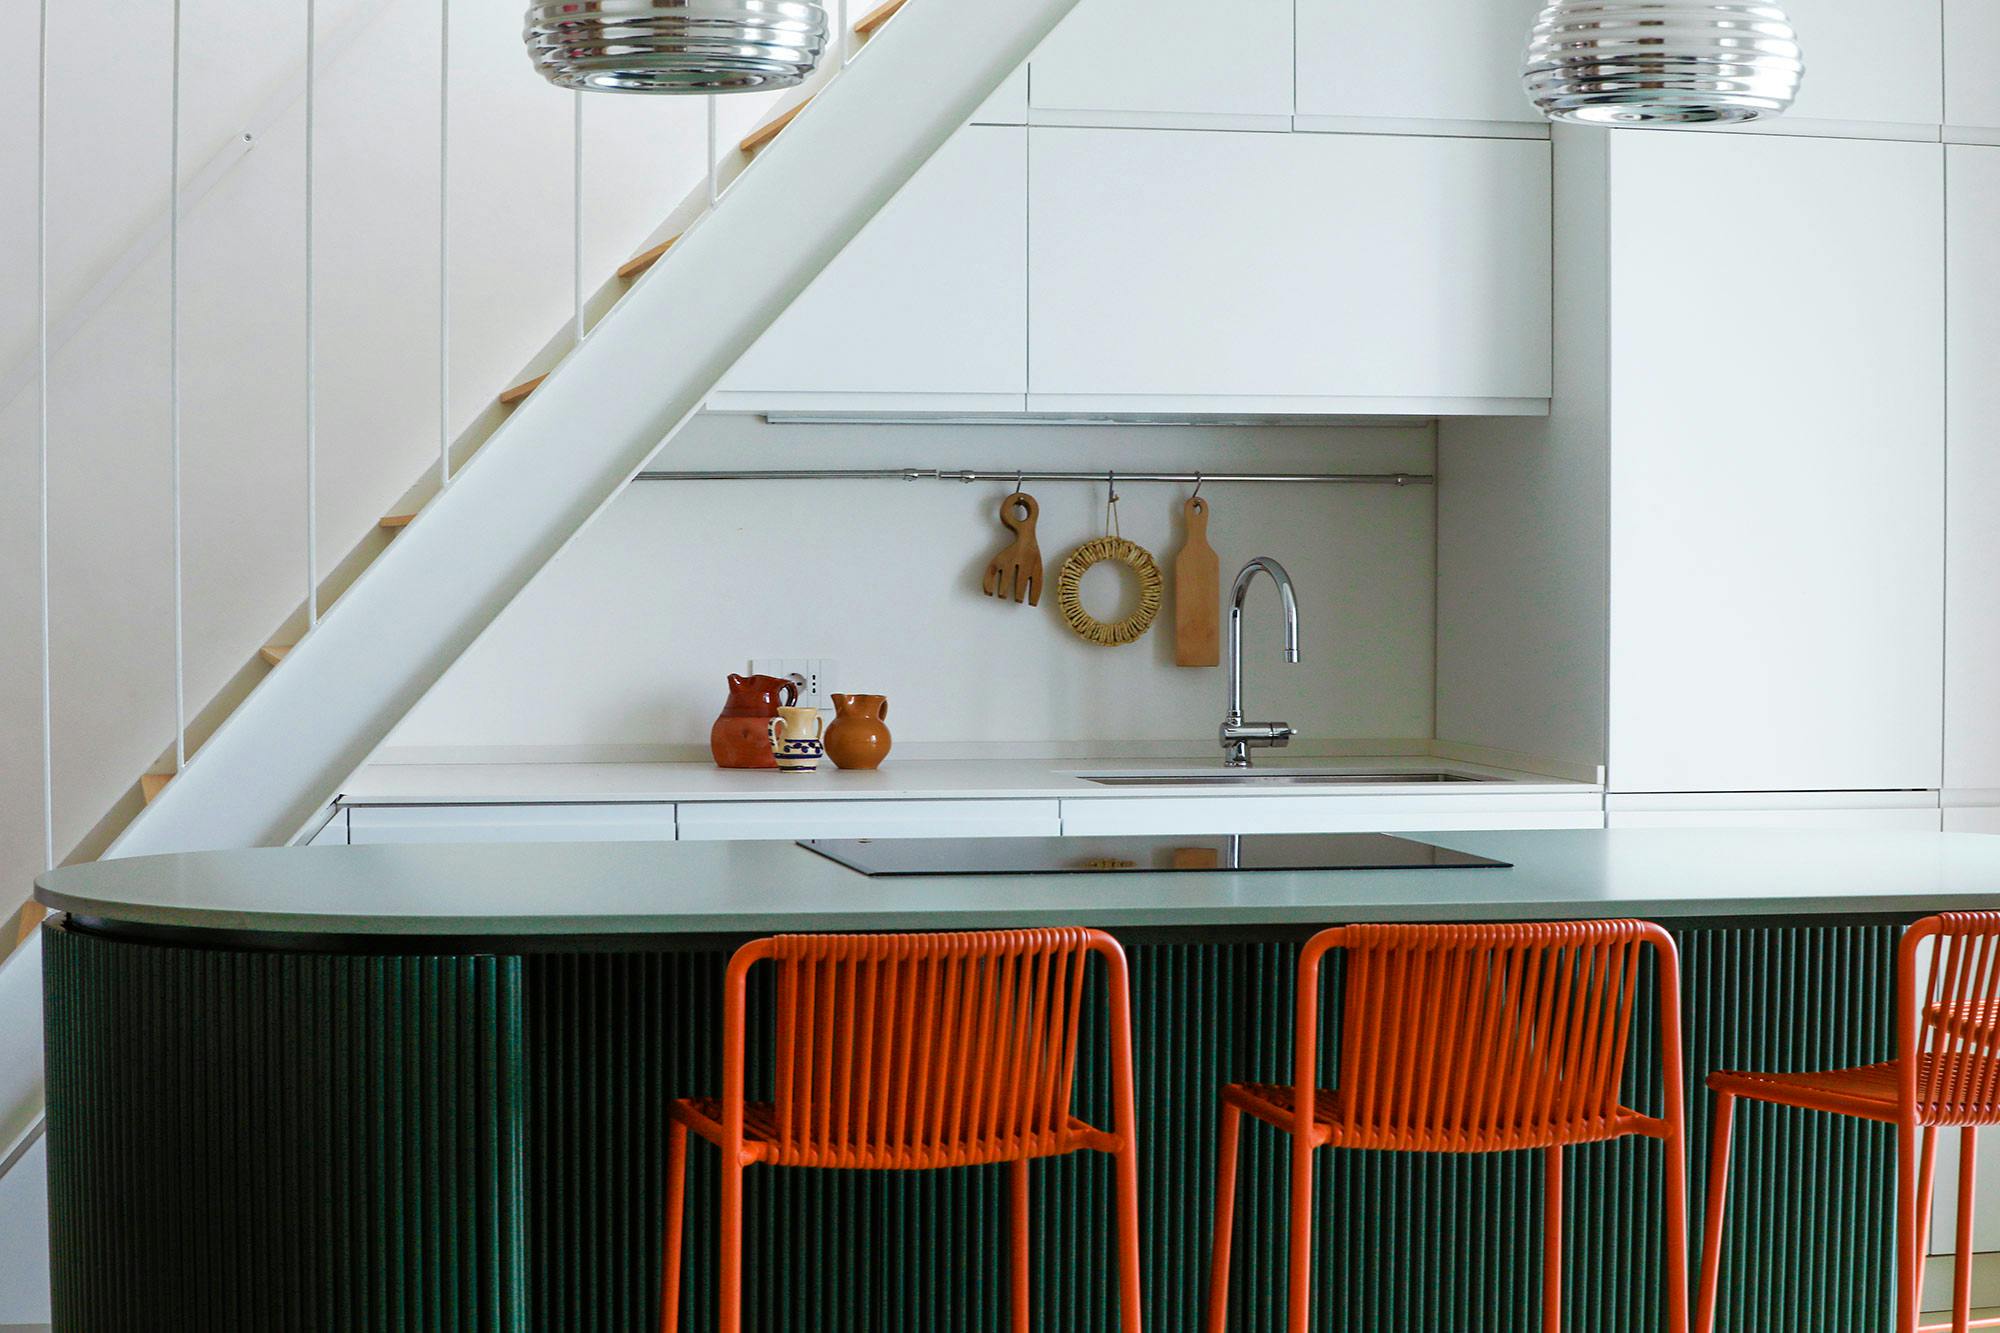 Imagen número 75 de Una cocina funcional bajo una escalera que aprovecha hasta el último milímetro sin renunciar al diseño